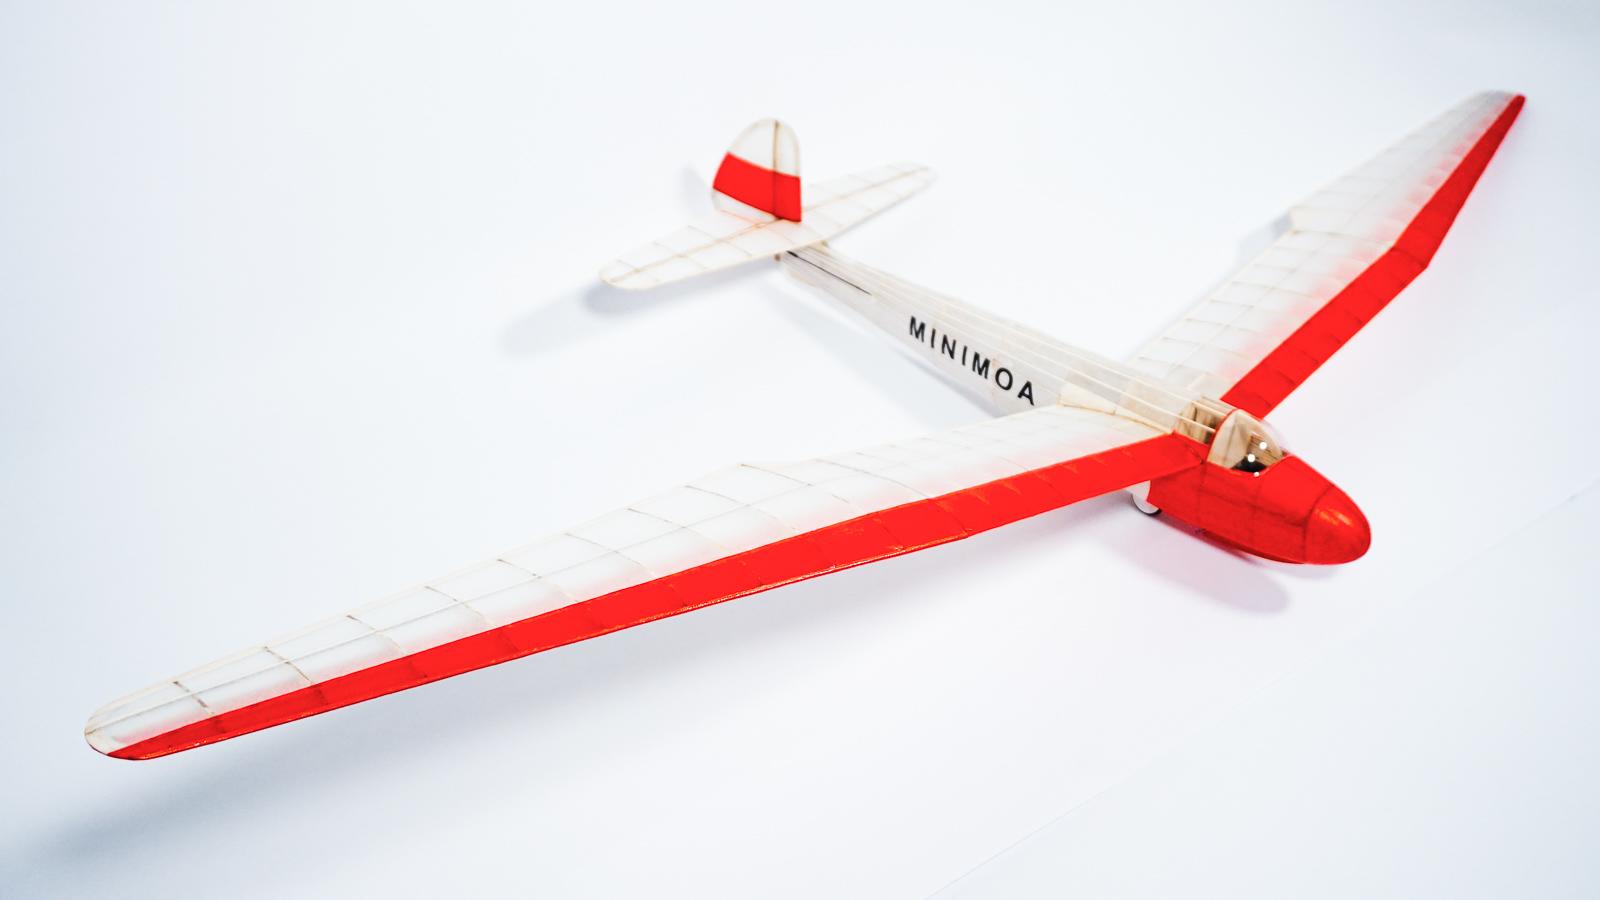 50" Minimoa Glider